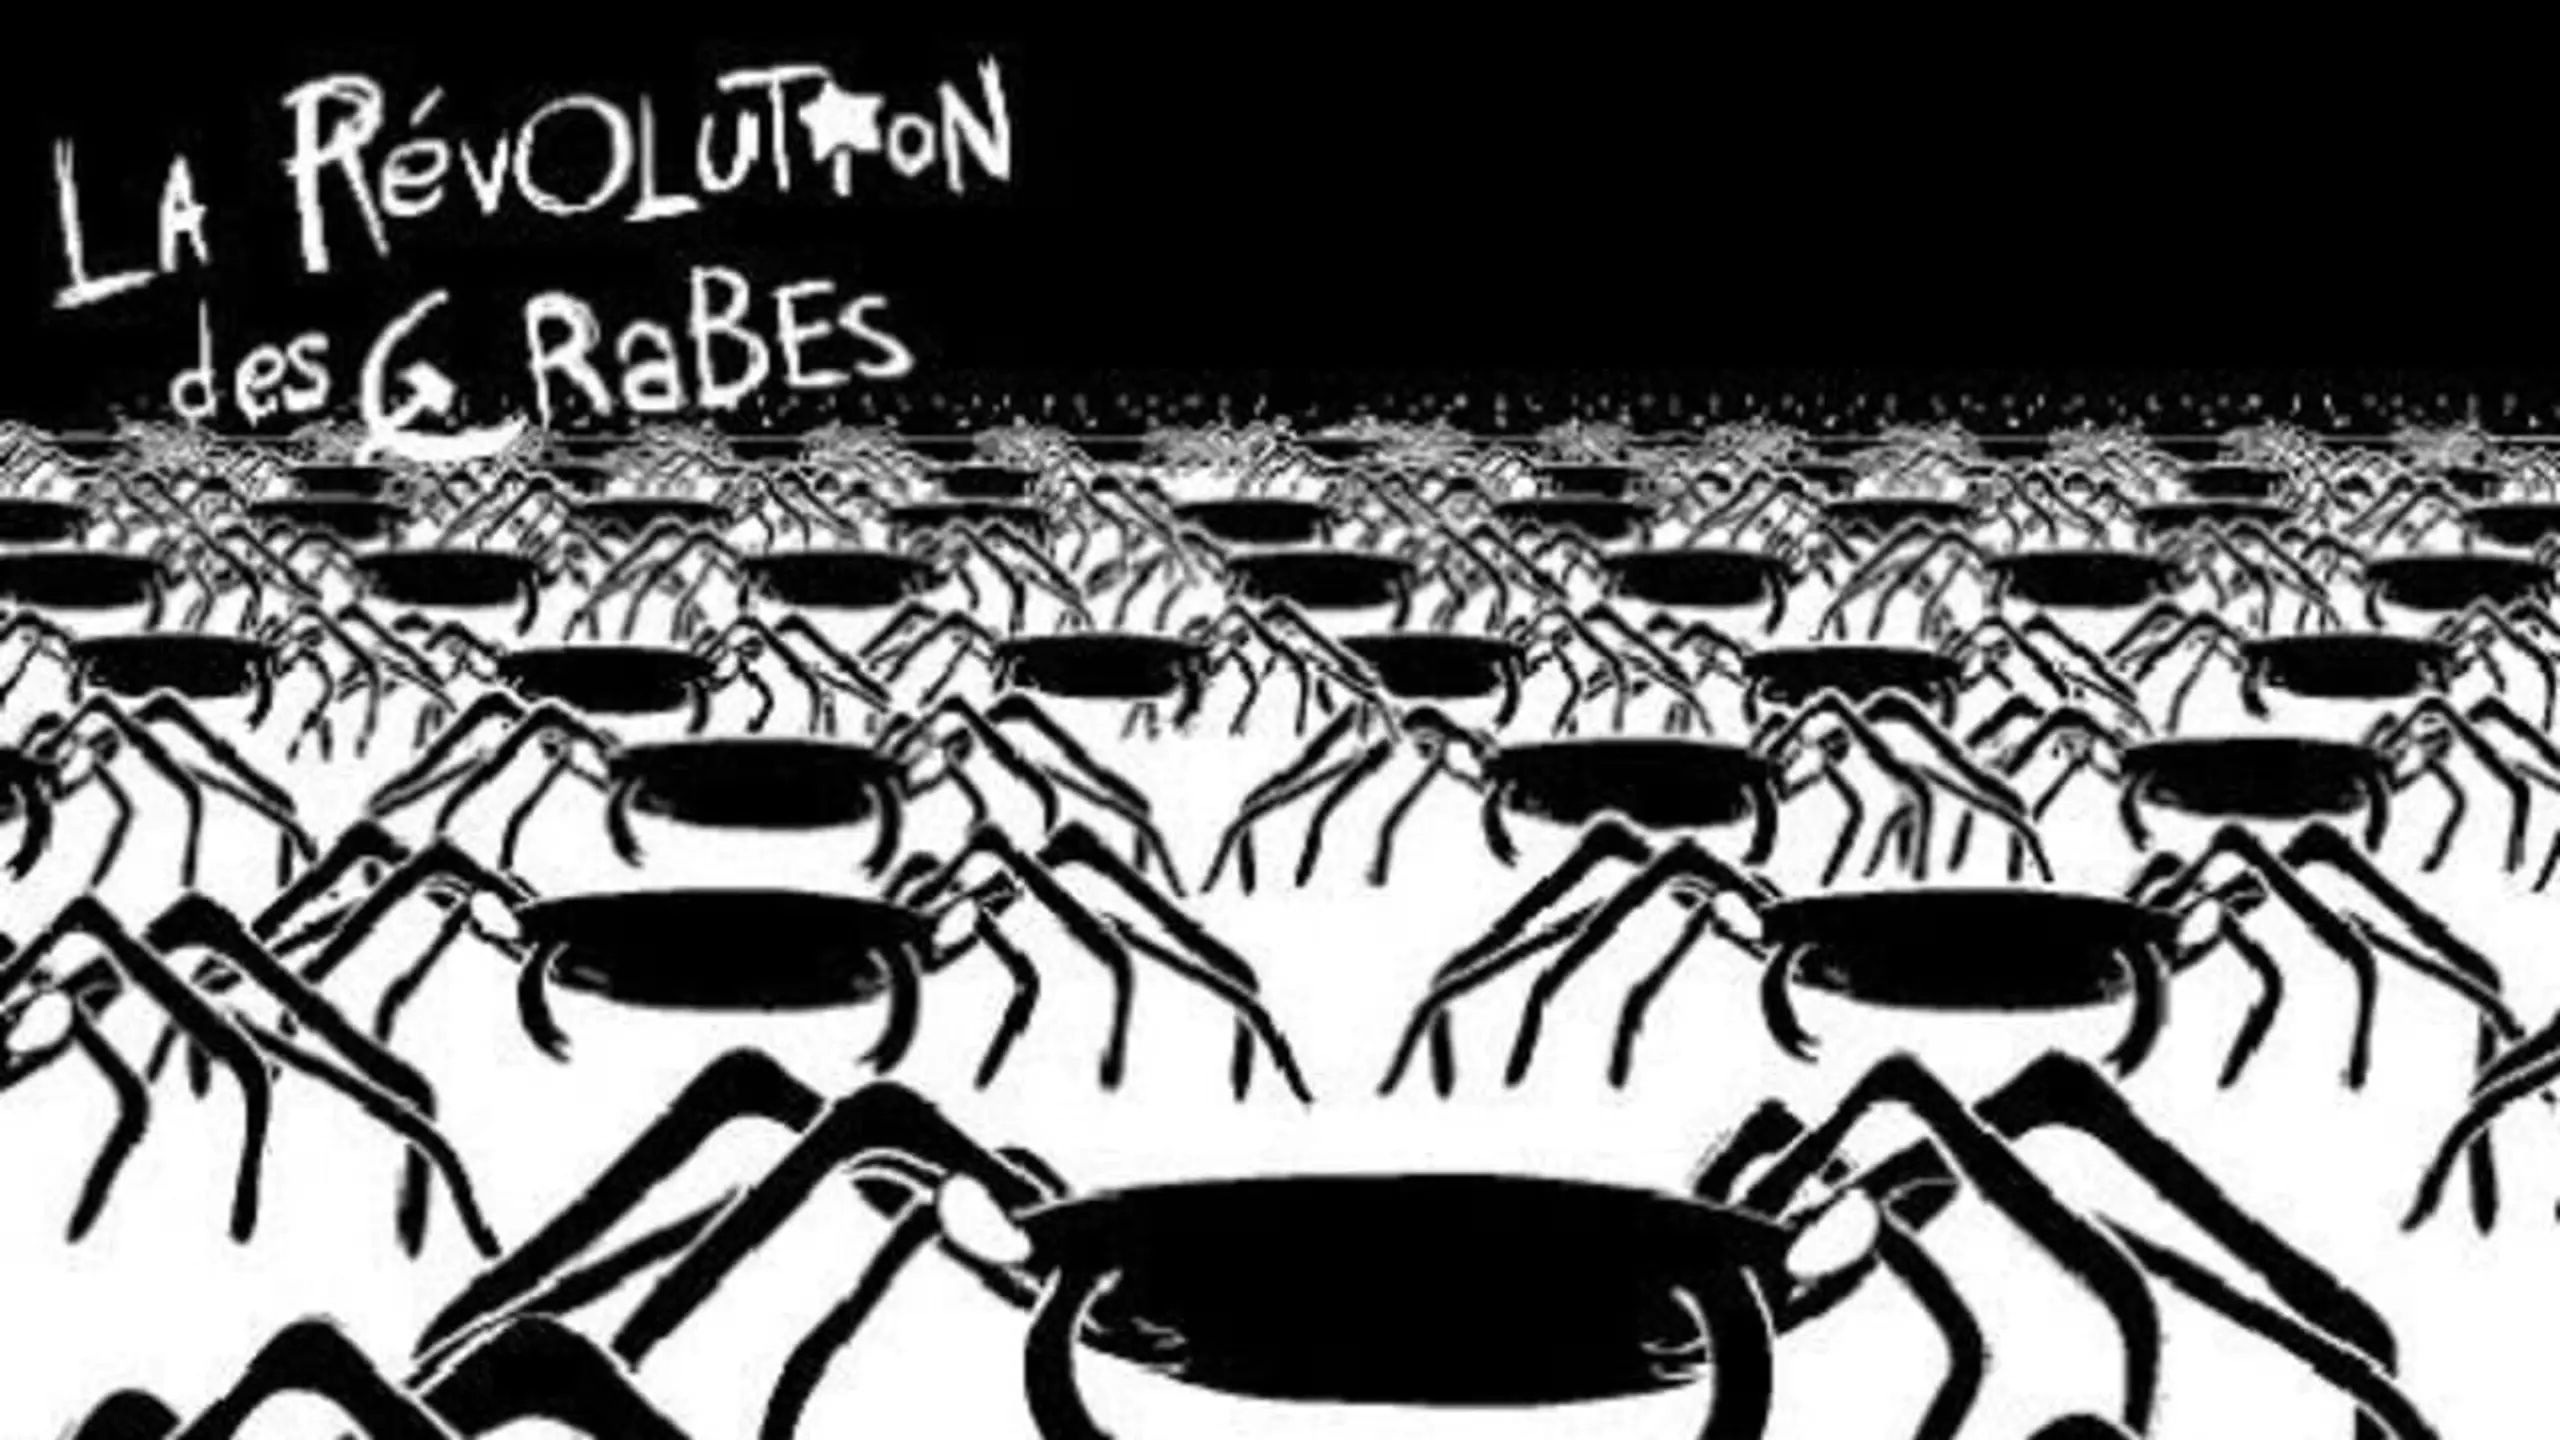 La révolution des crabes